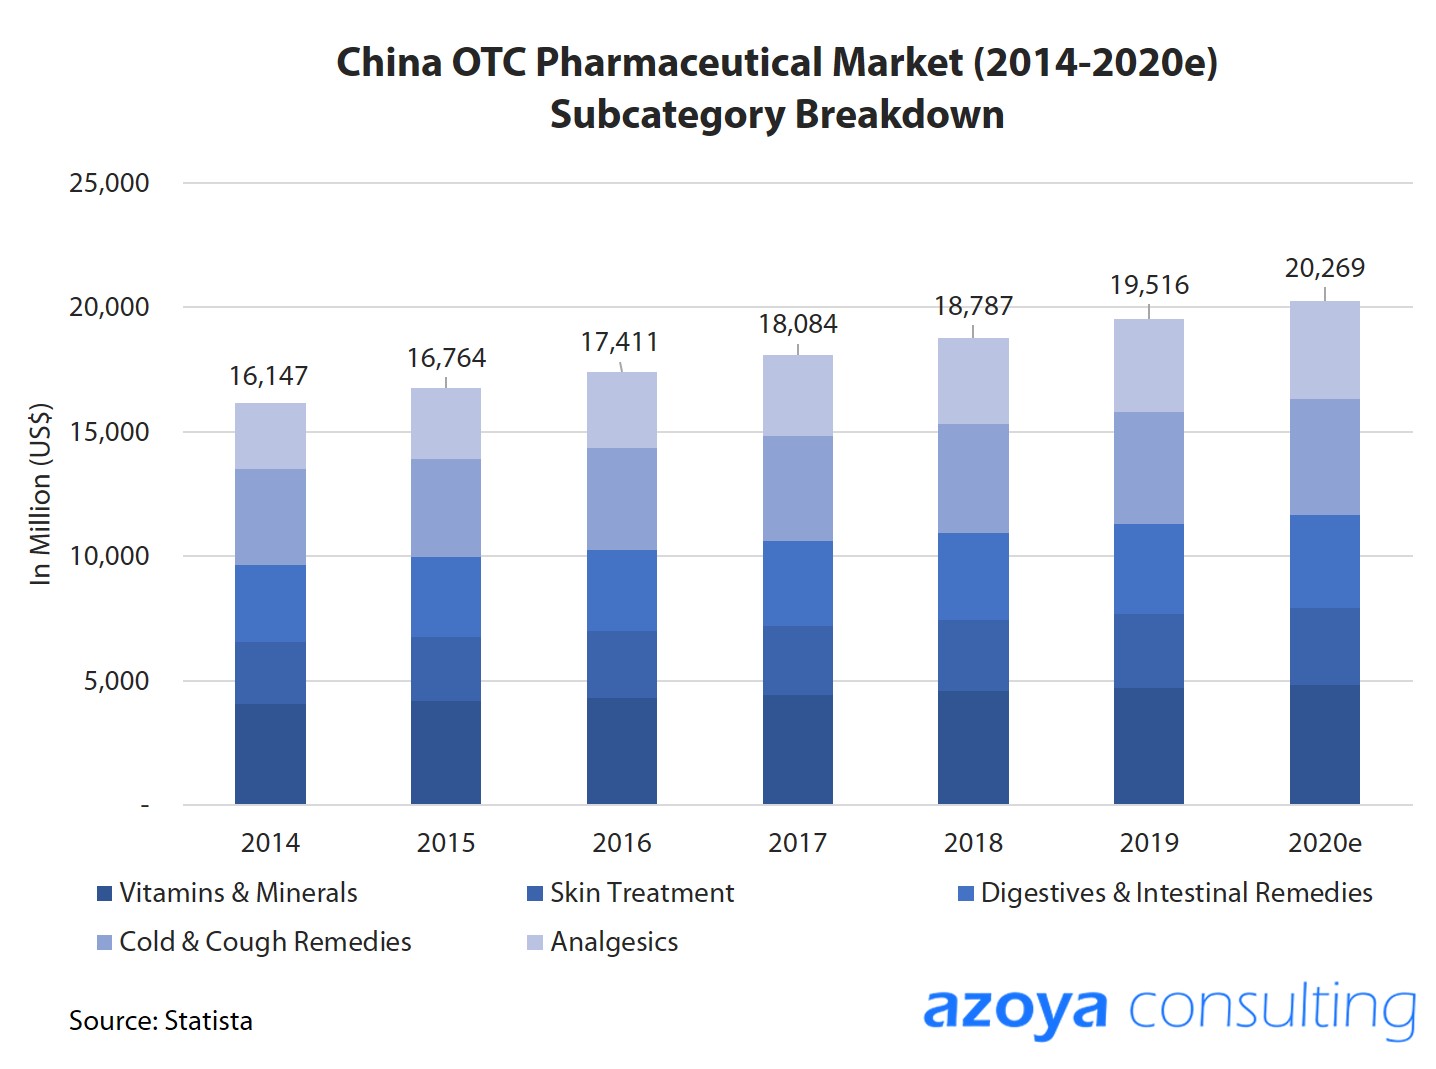 China OTC pharma market breakdown by subcategory.jpg